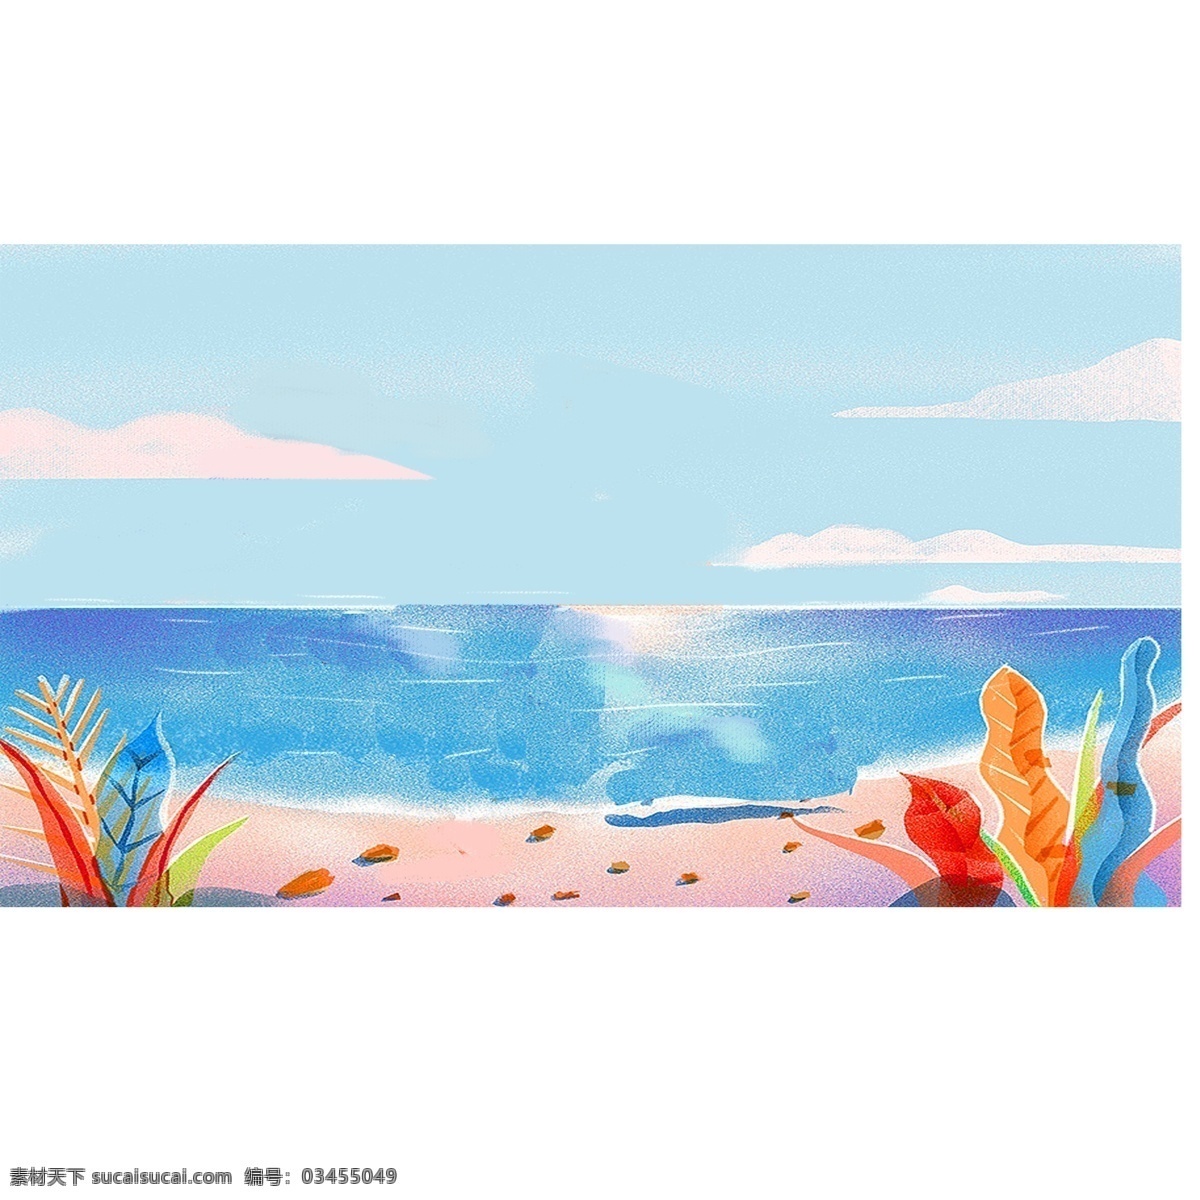 夏天 蓝天 下 大 海边 海滩 白云 沙子 贝壳 黄色 蓝色 海草 海鸟 开心 高兴 清凉